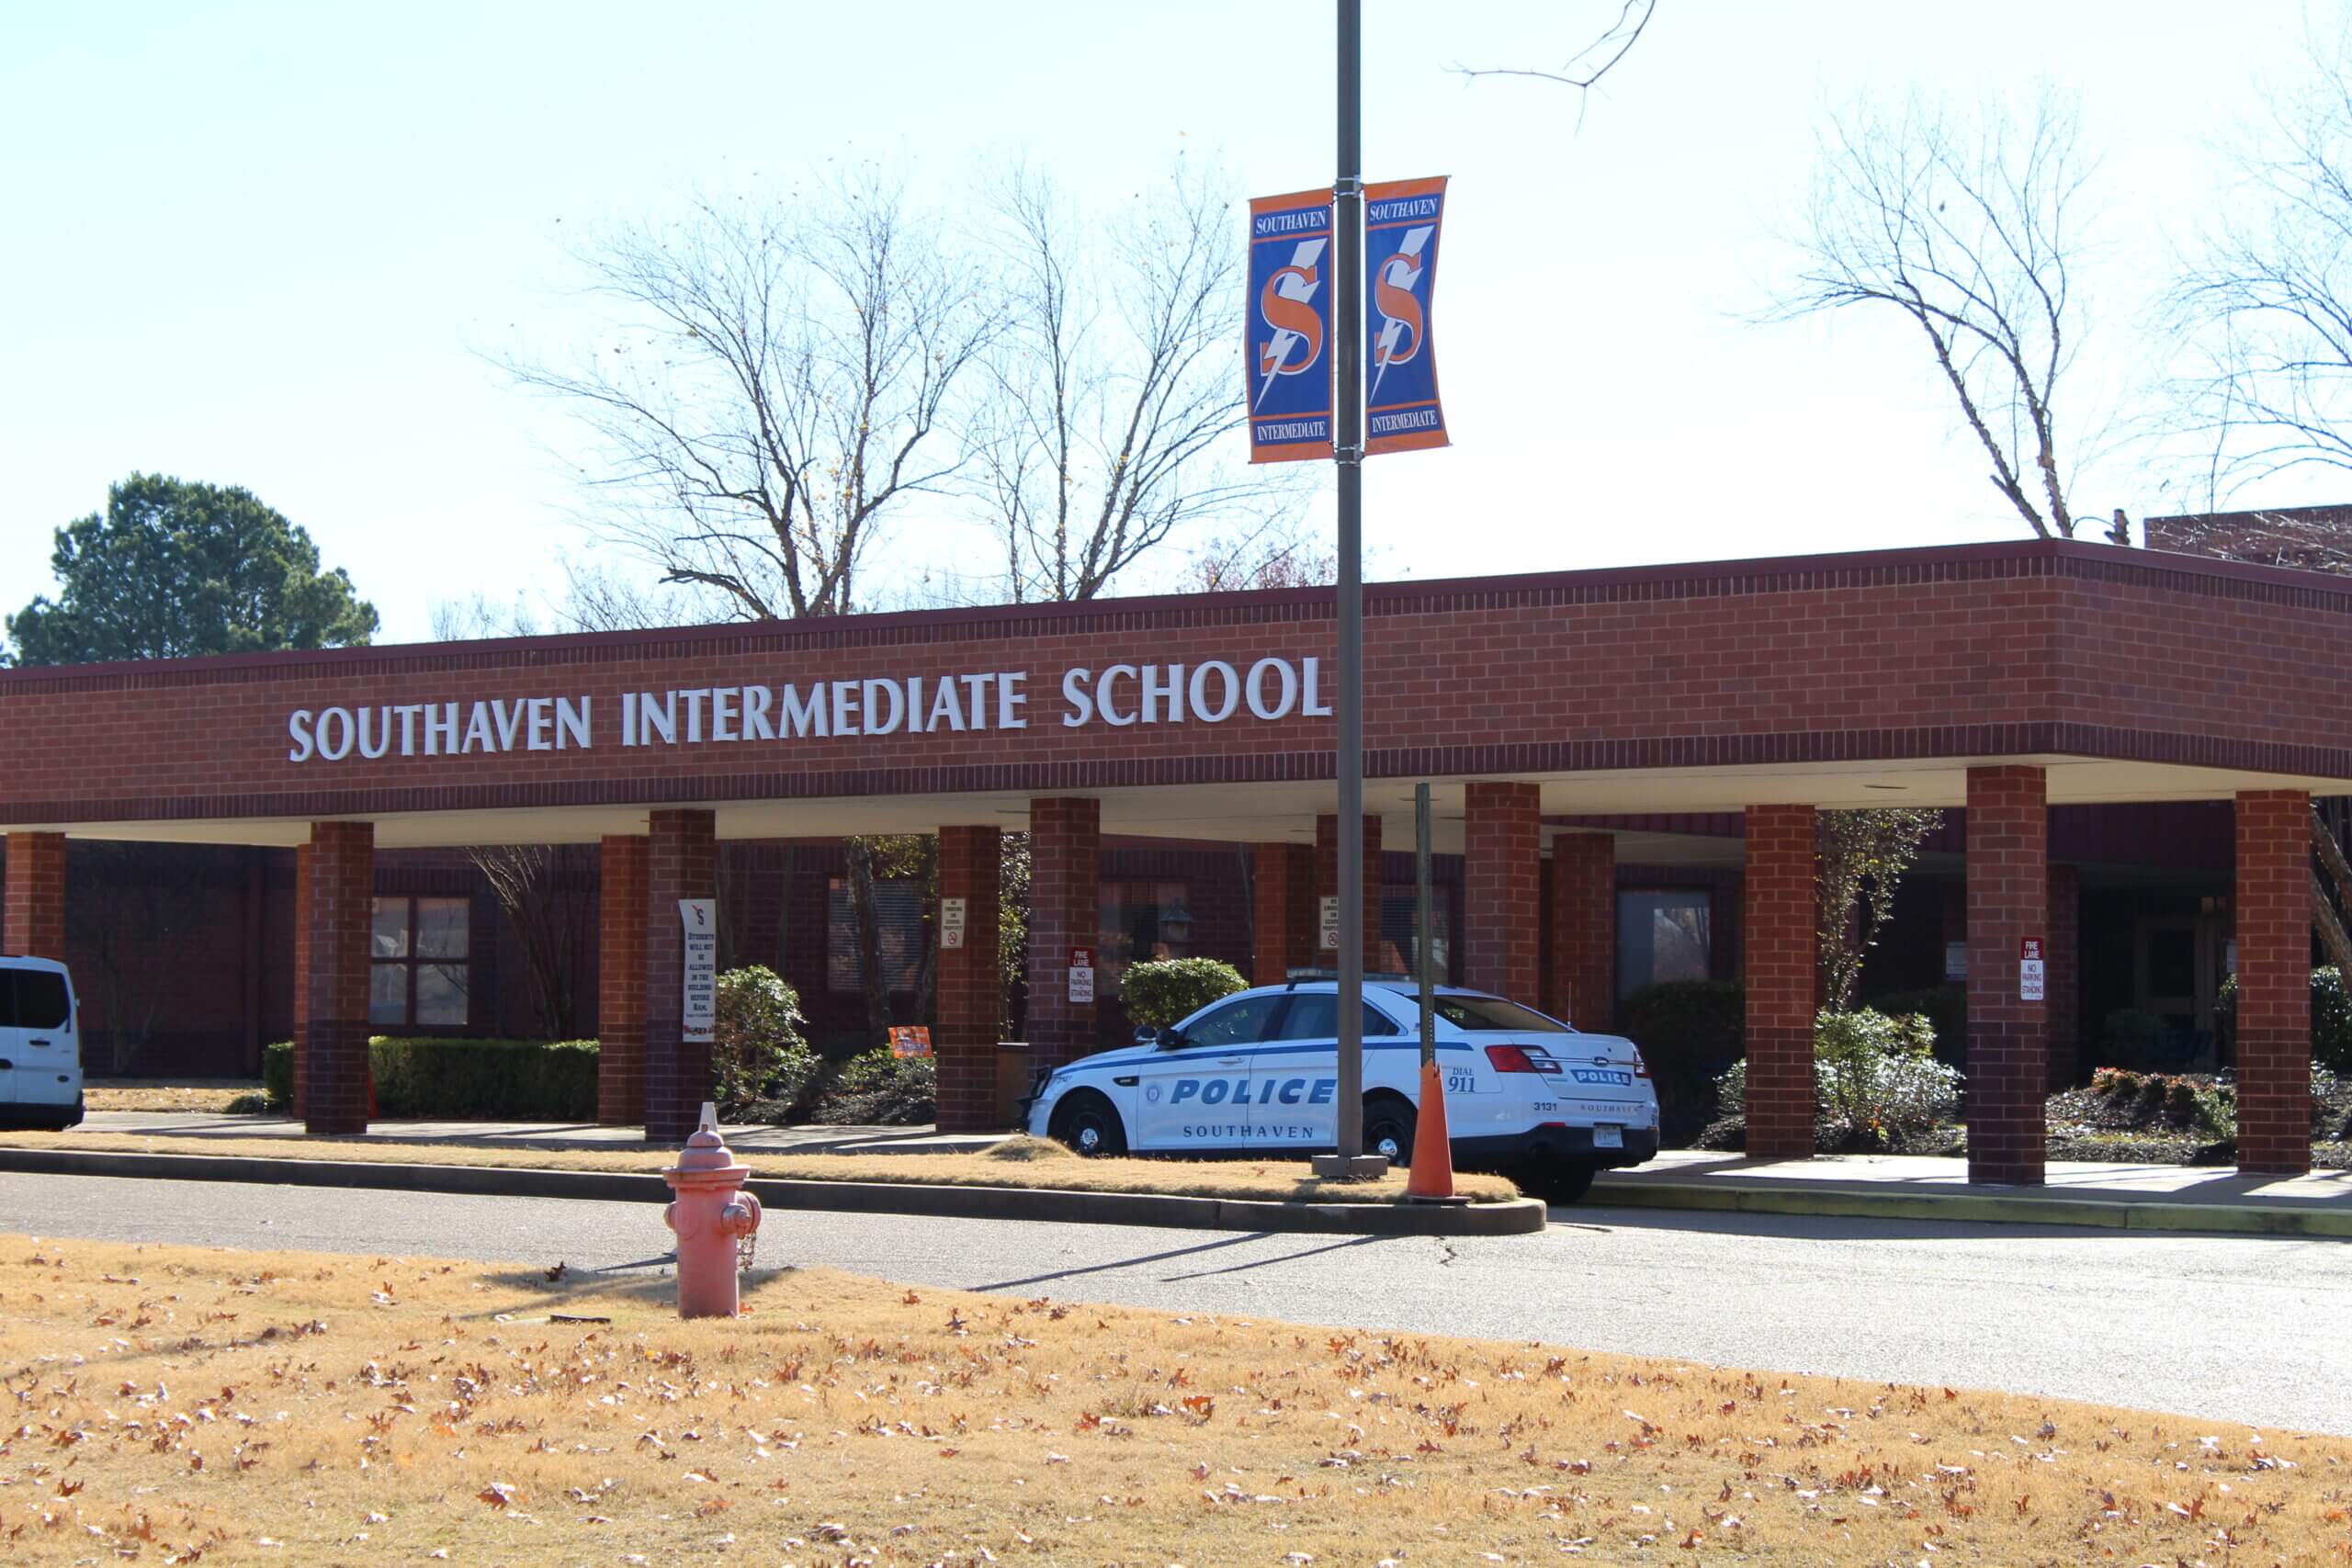 Southaven Intermediate School